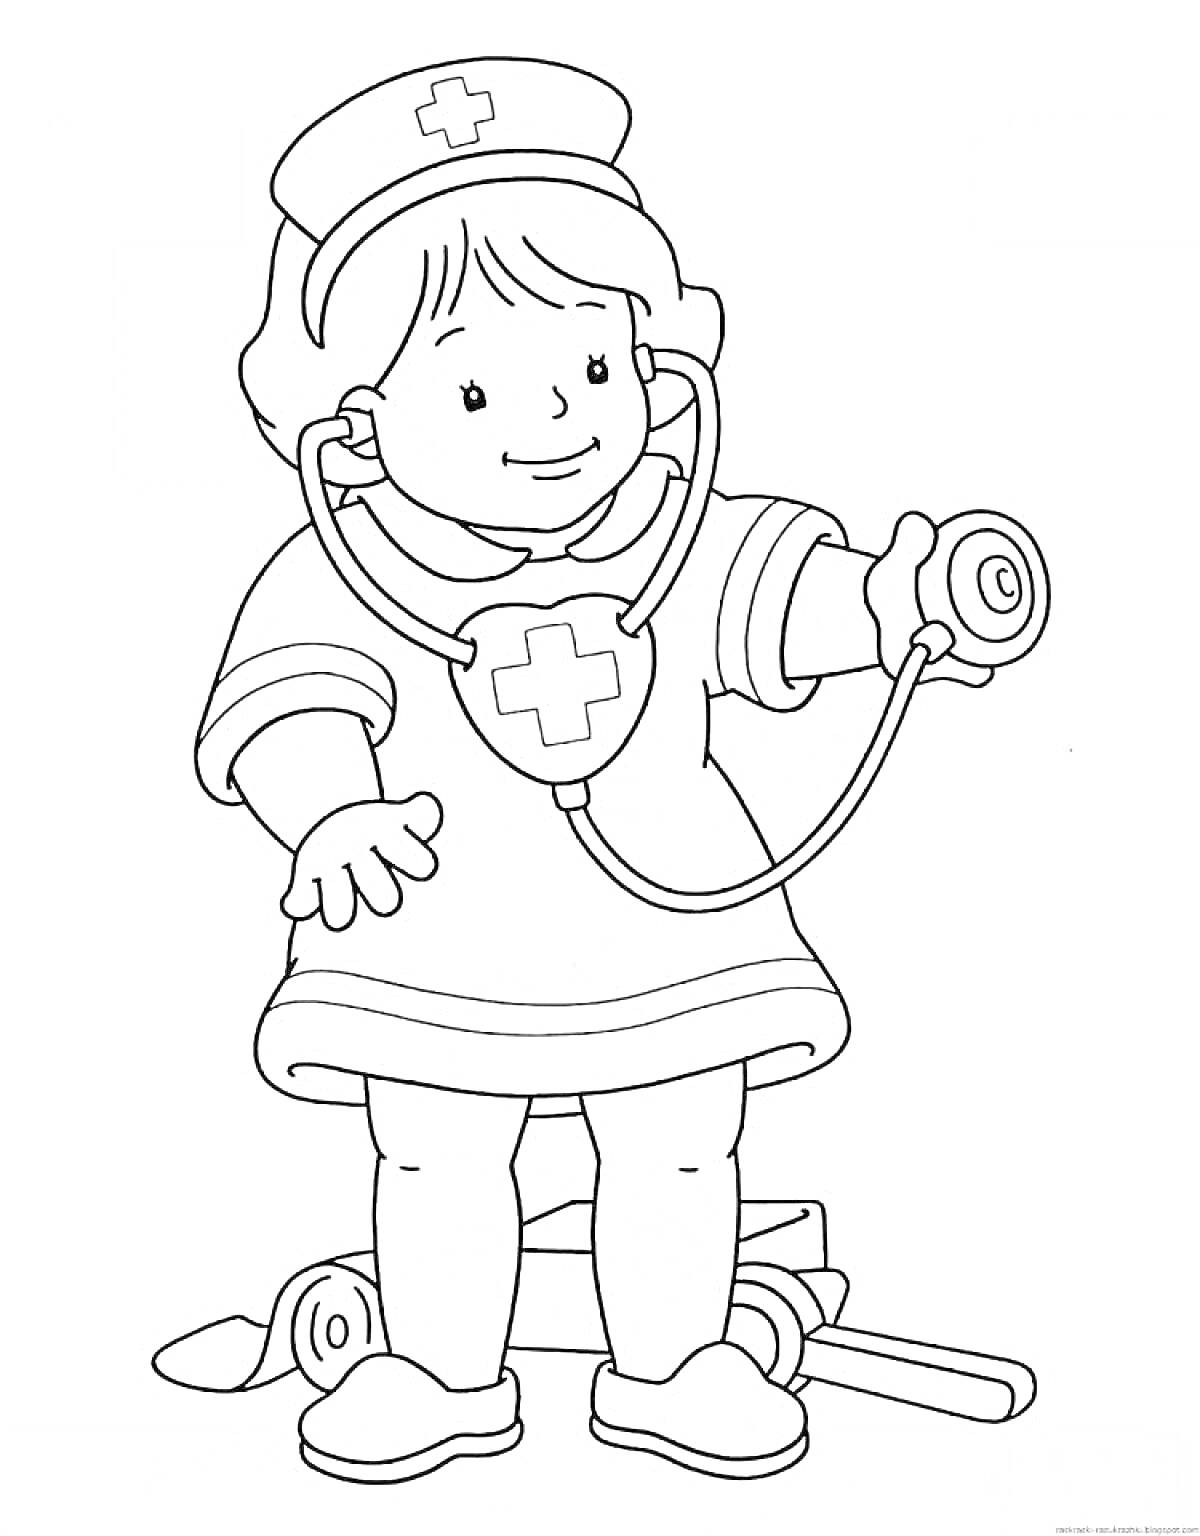 Раскраска Ребенок с медицинским капюшоном, стетоскопом и аптечкой